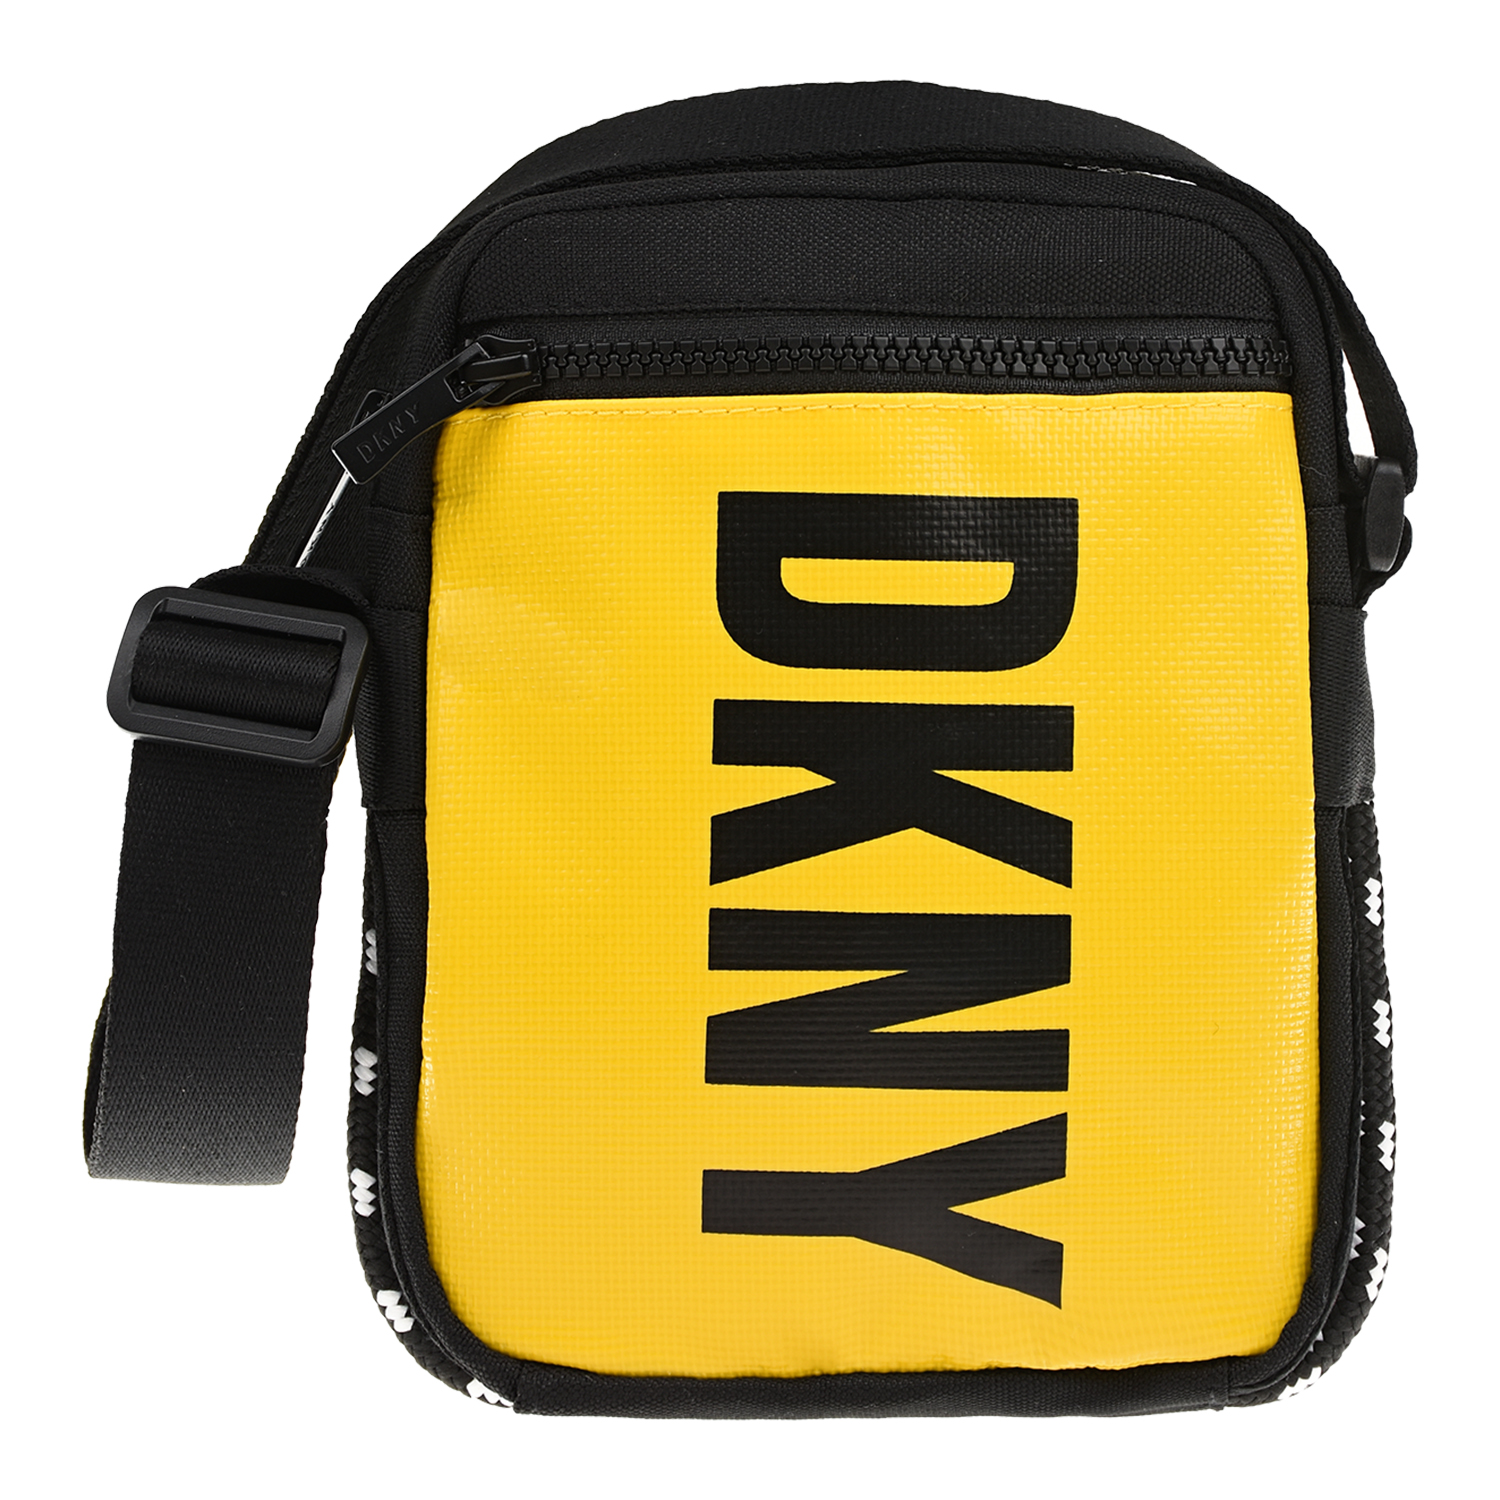 Желтая сумка с ремнем через плечо DKNY детская, размер unica, цвет желтый - фото 1